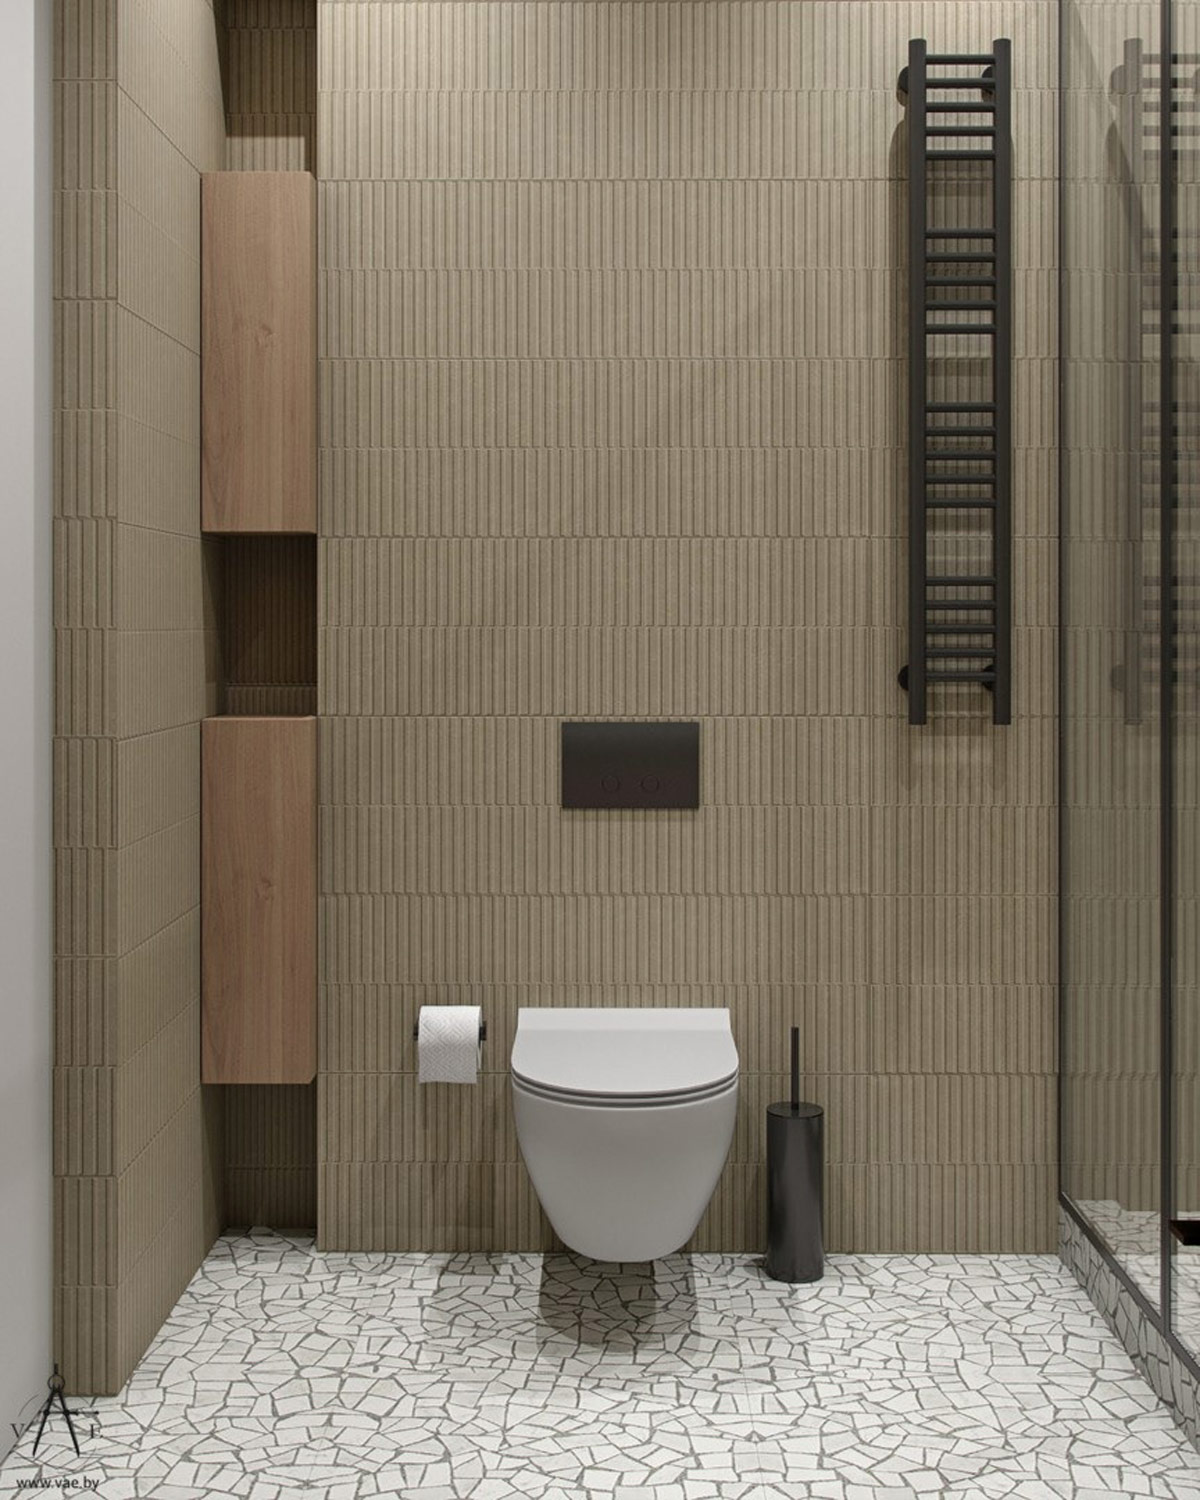 Không chỉ có tủ lưu trữ kết hợp bồn rửa là sử dụng giải pháp gắn tường, cả bồn toilet cũng thiết kế tương tự để giải phóng diện tích mặt sàn.. Tủ gỗ nhỏ hẹp khéo léo tận dụng tối đa hốc tường nhỏ phía bên phải toilet.